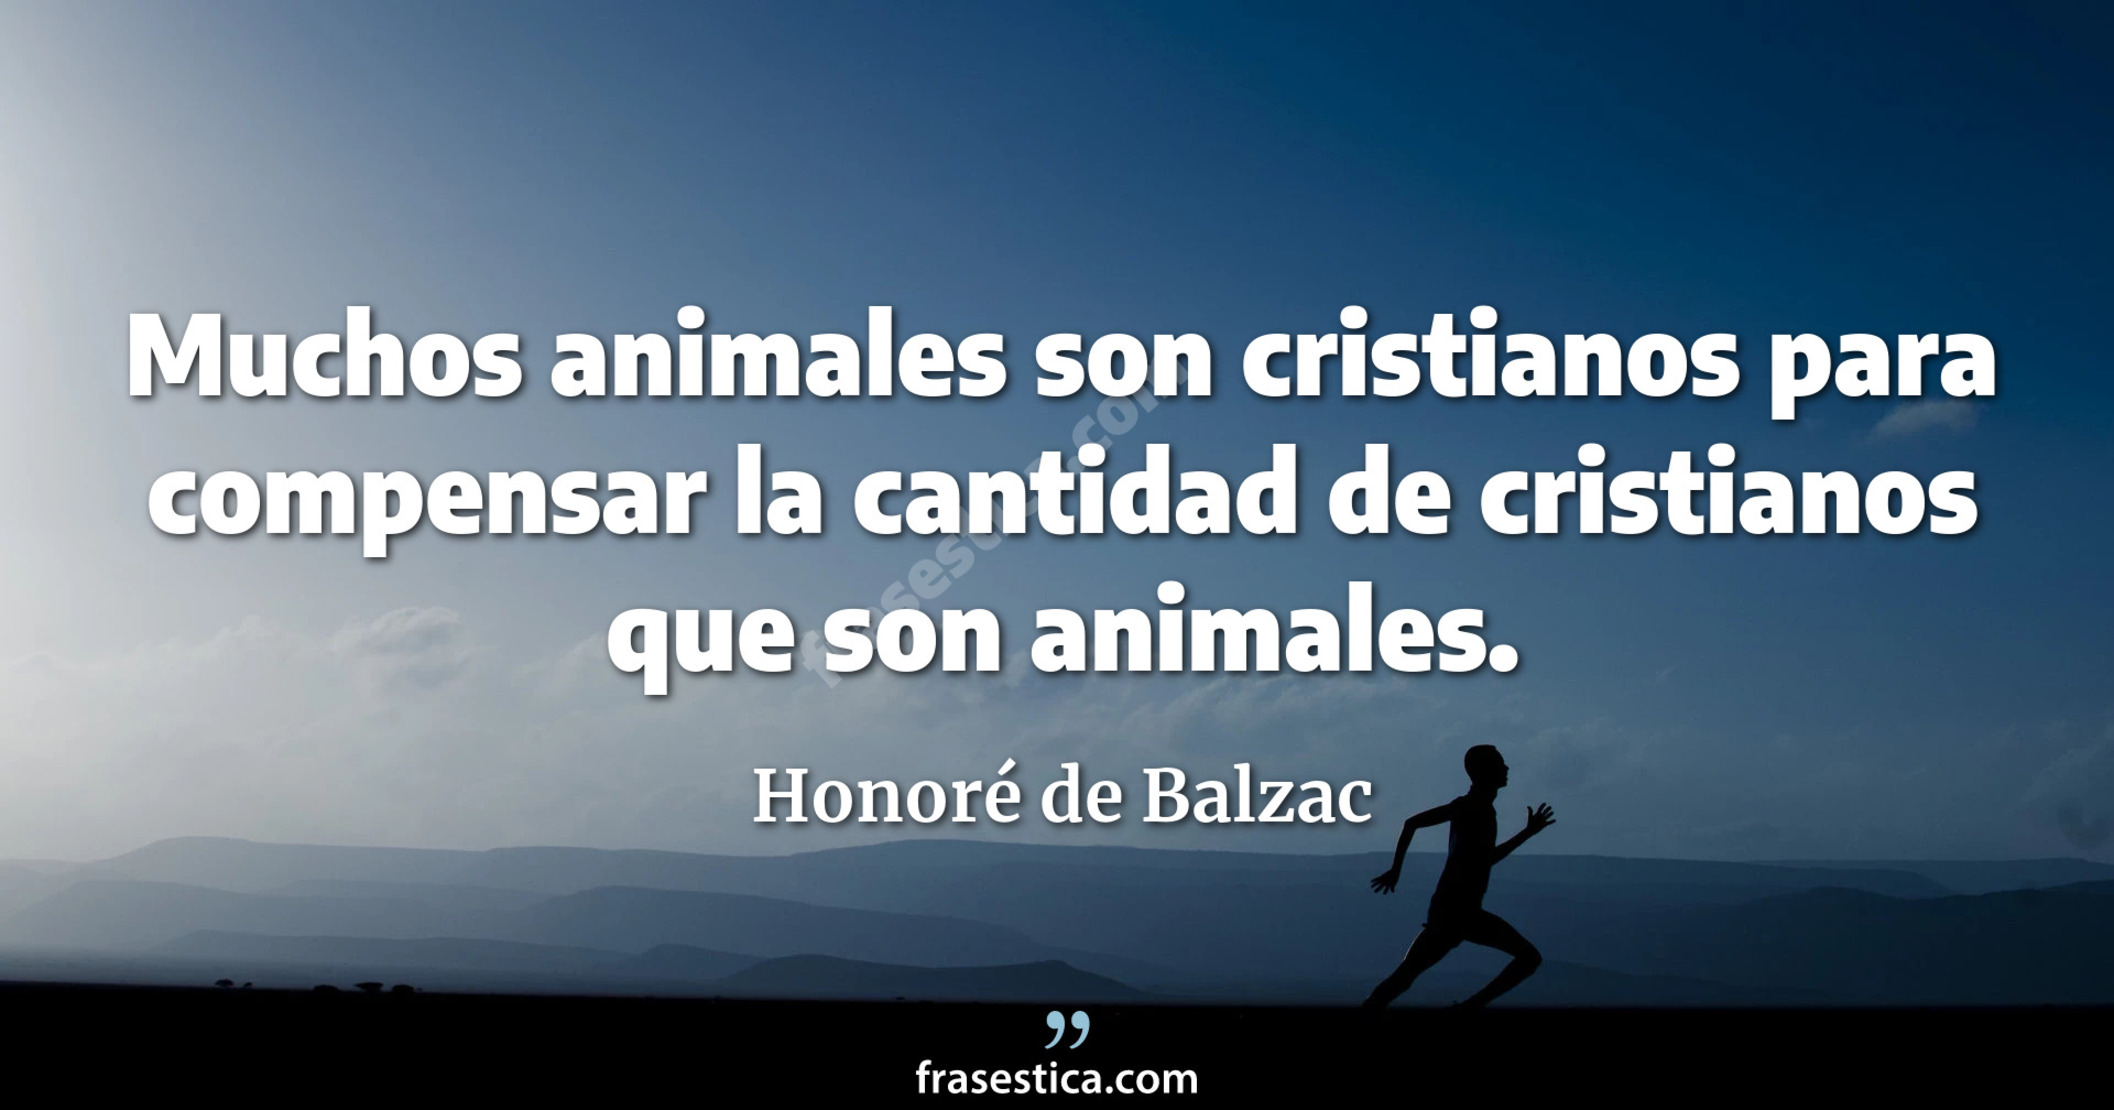 Muchos animales son cristianos para compensar la cantidad de cristianos que son animales. - Honoré de Balzac